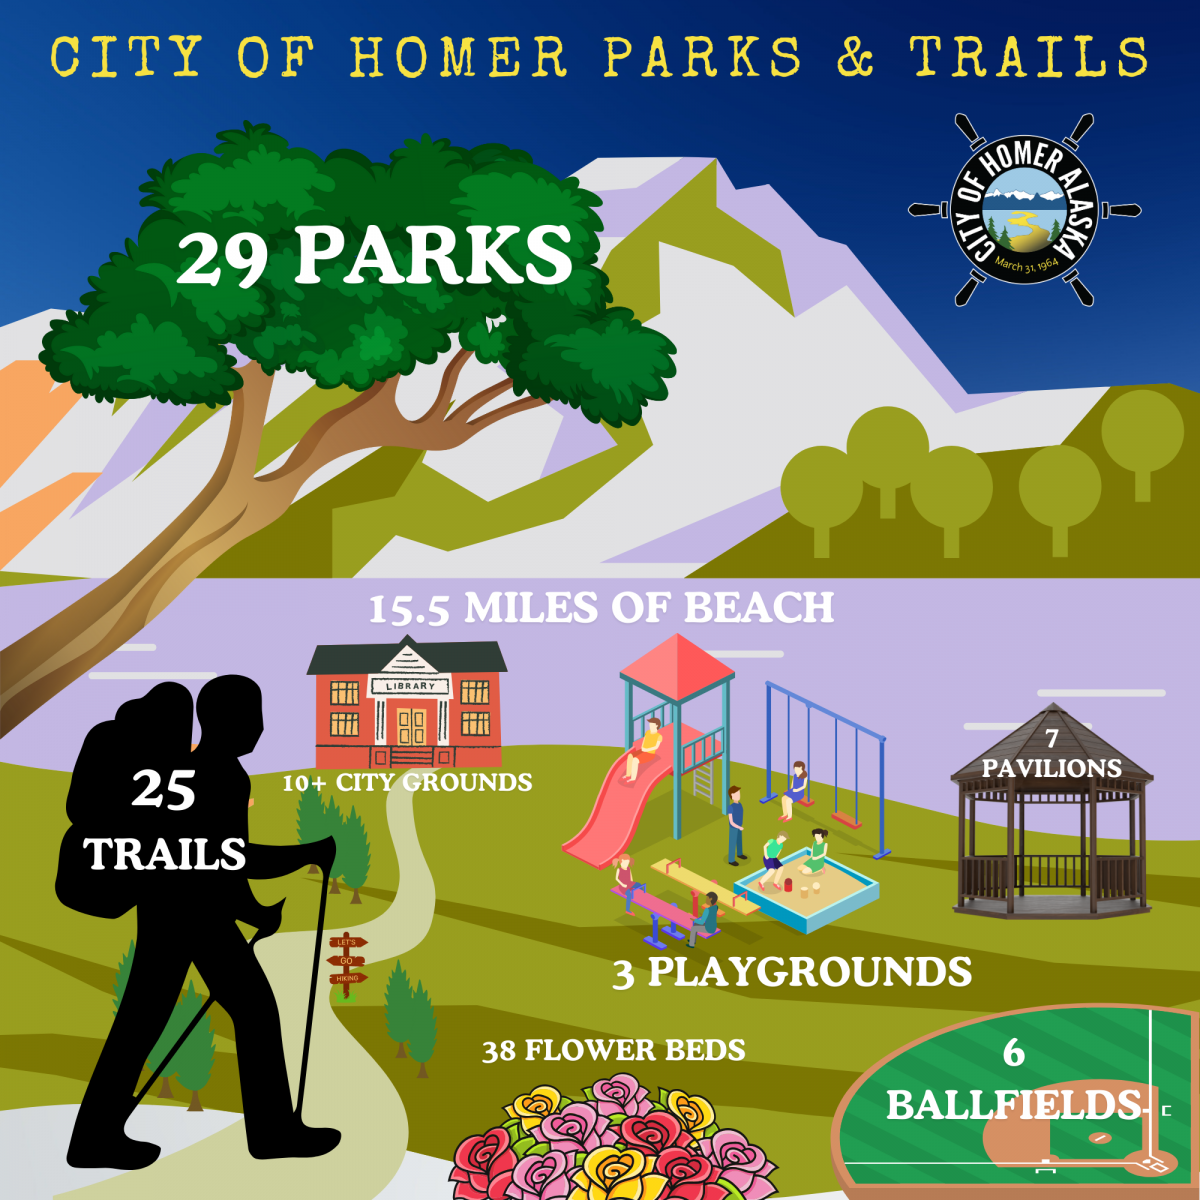 Parks & Trails